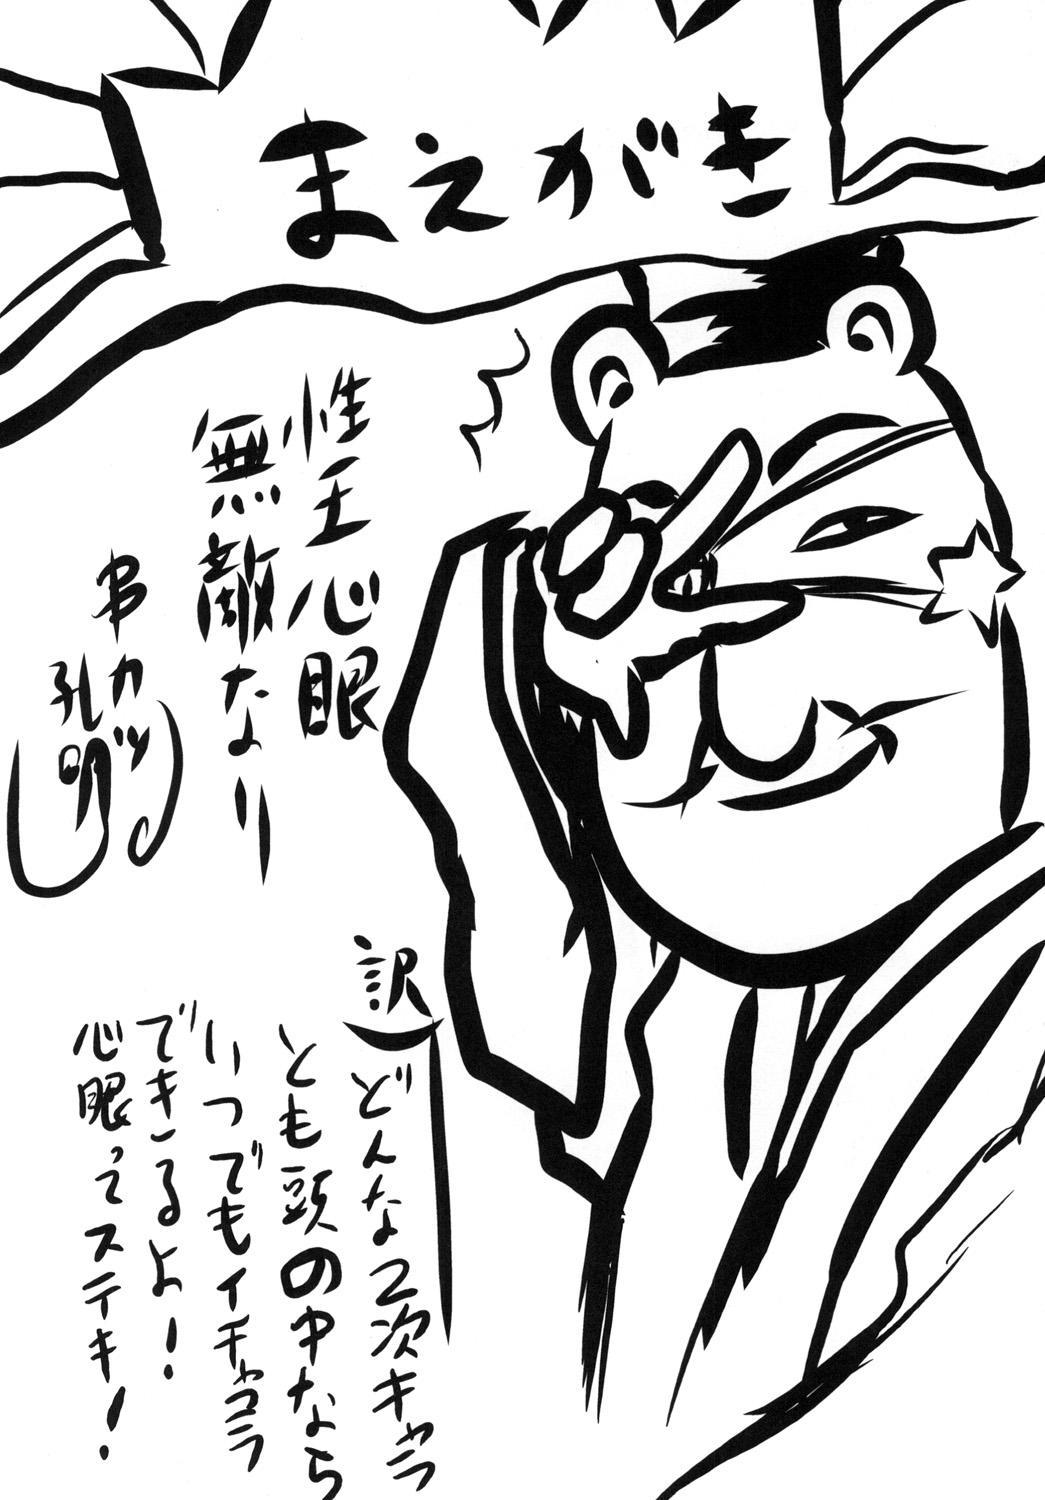 Metendo Omodume BOX XXIV - Chuunibyou demo koi ga shitai Beurette - Page 4